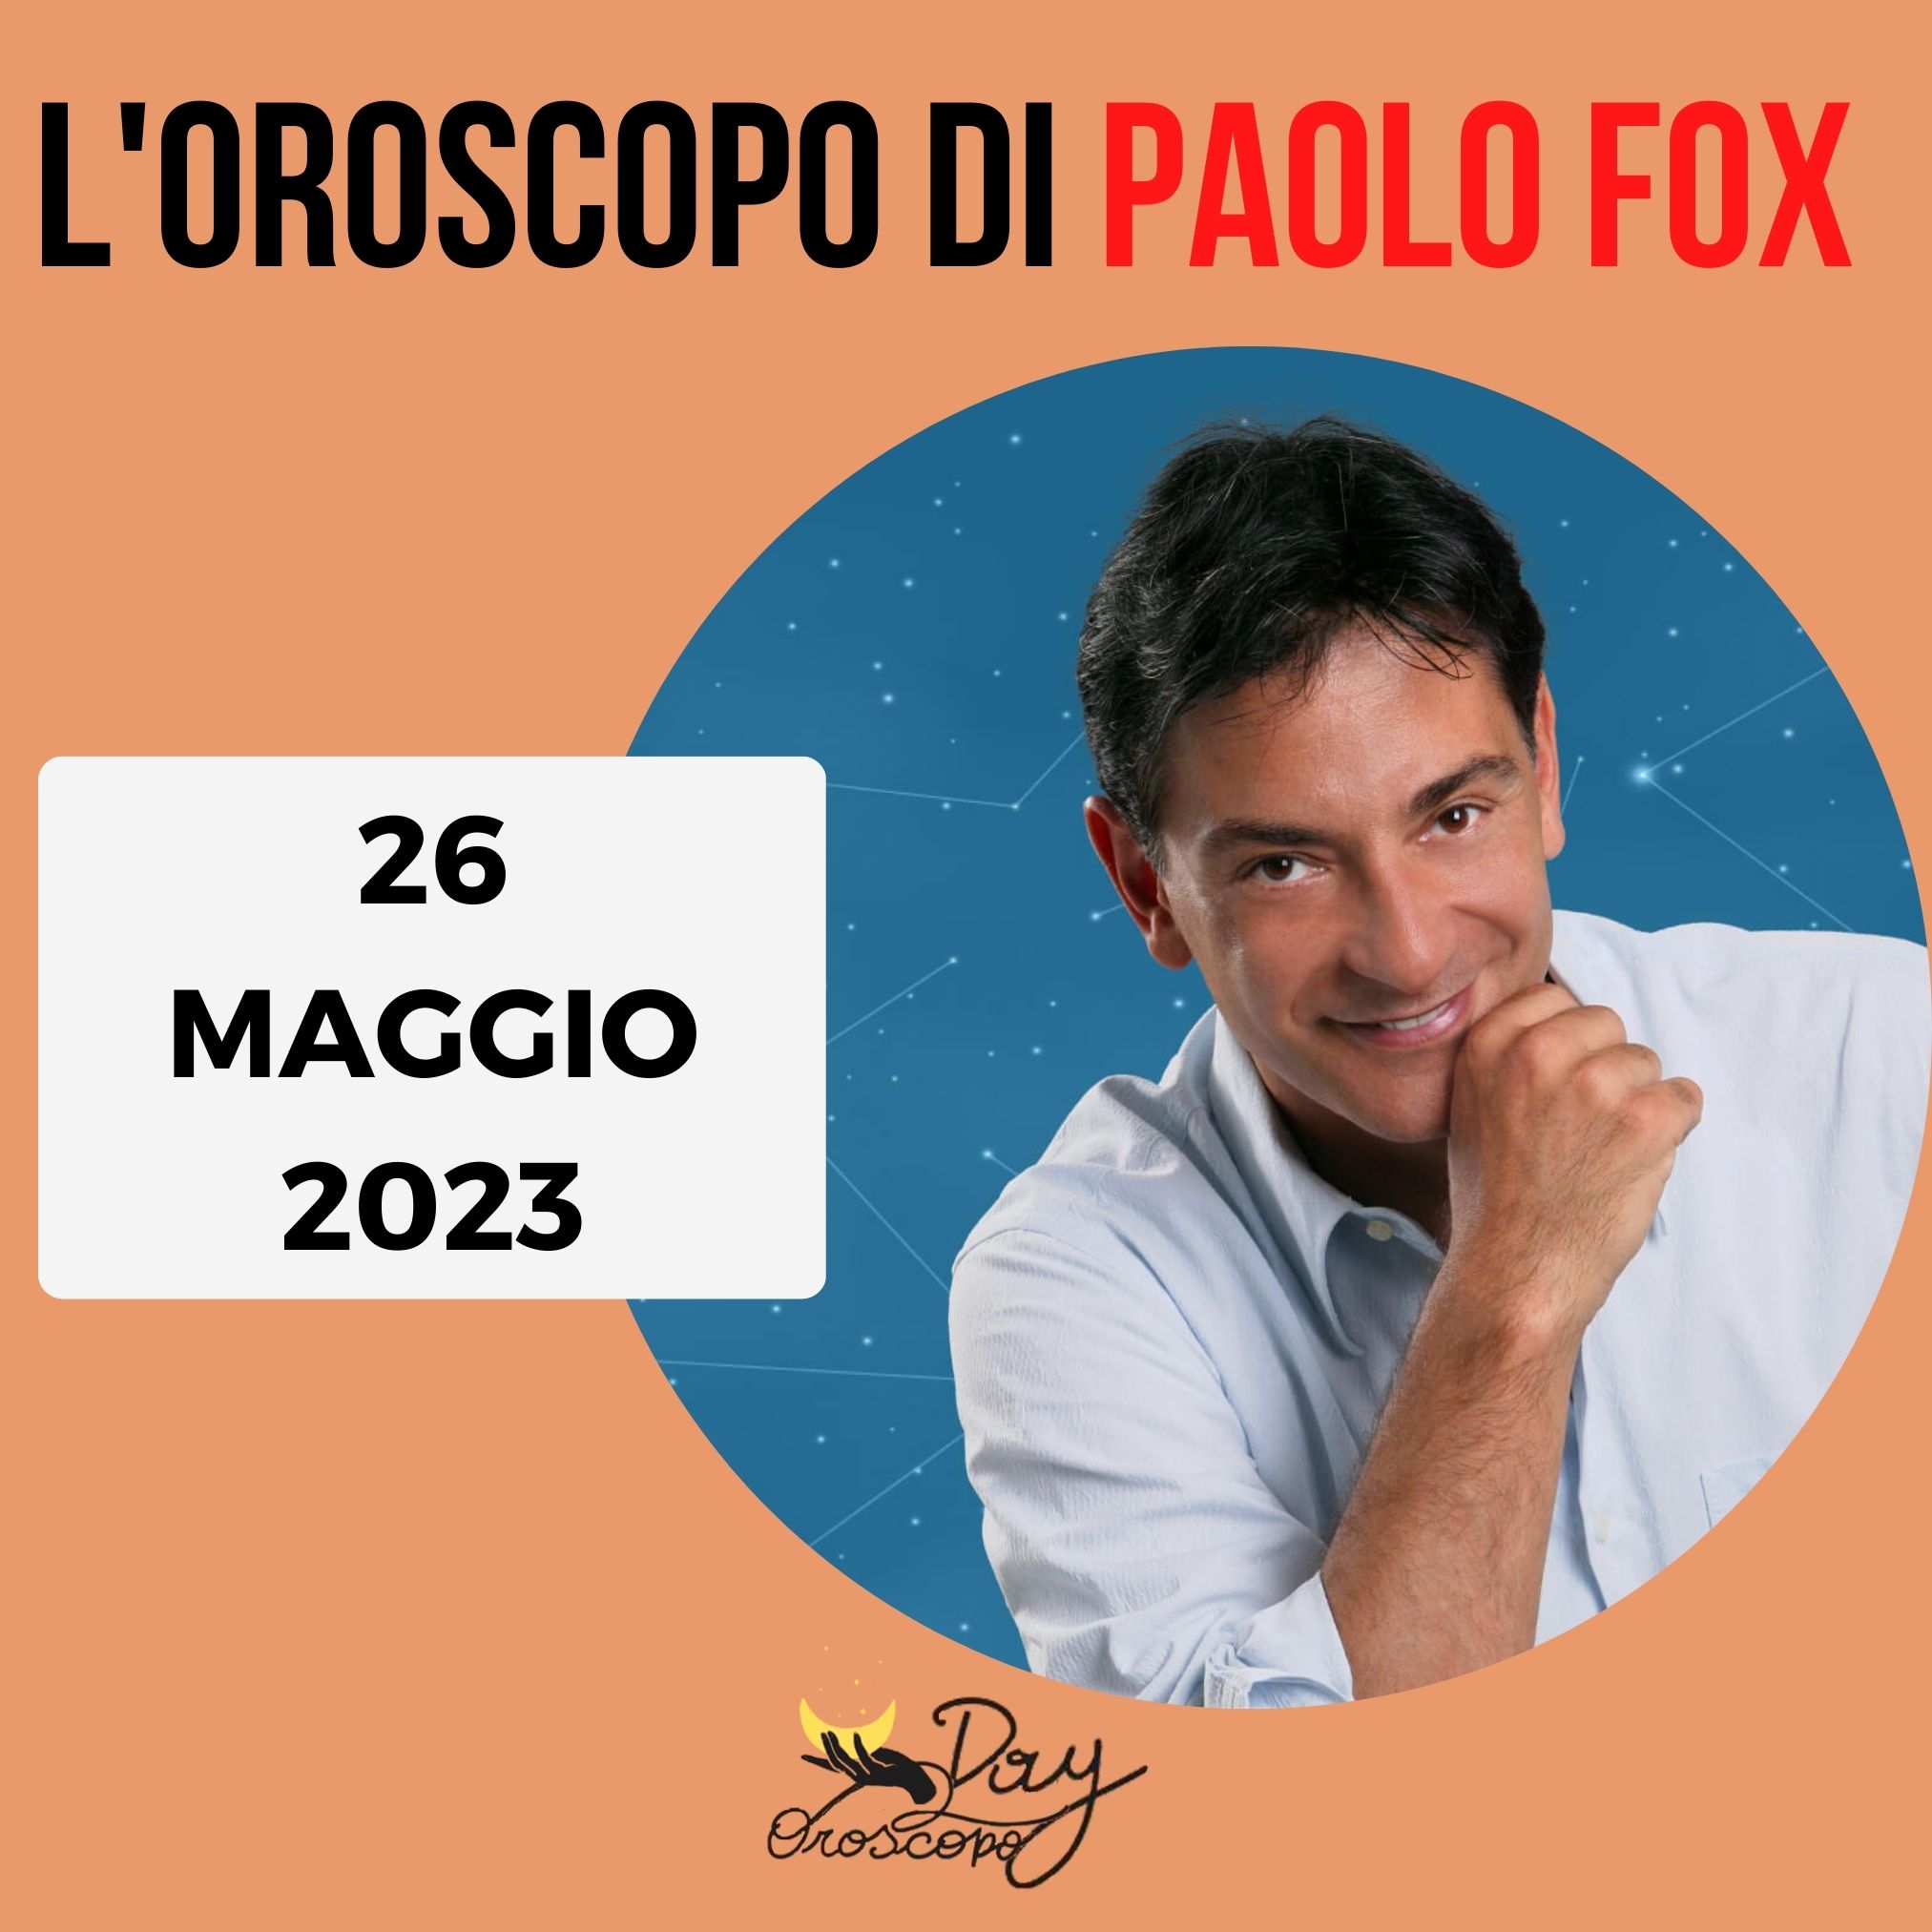 Oroscopo oggi domani Paolo Fox 26 maggio 2023